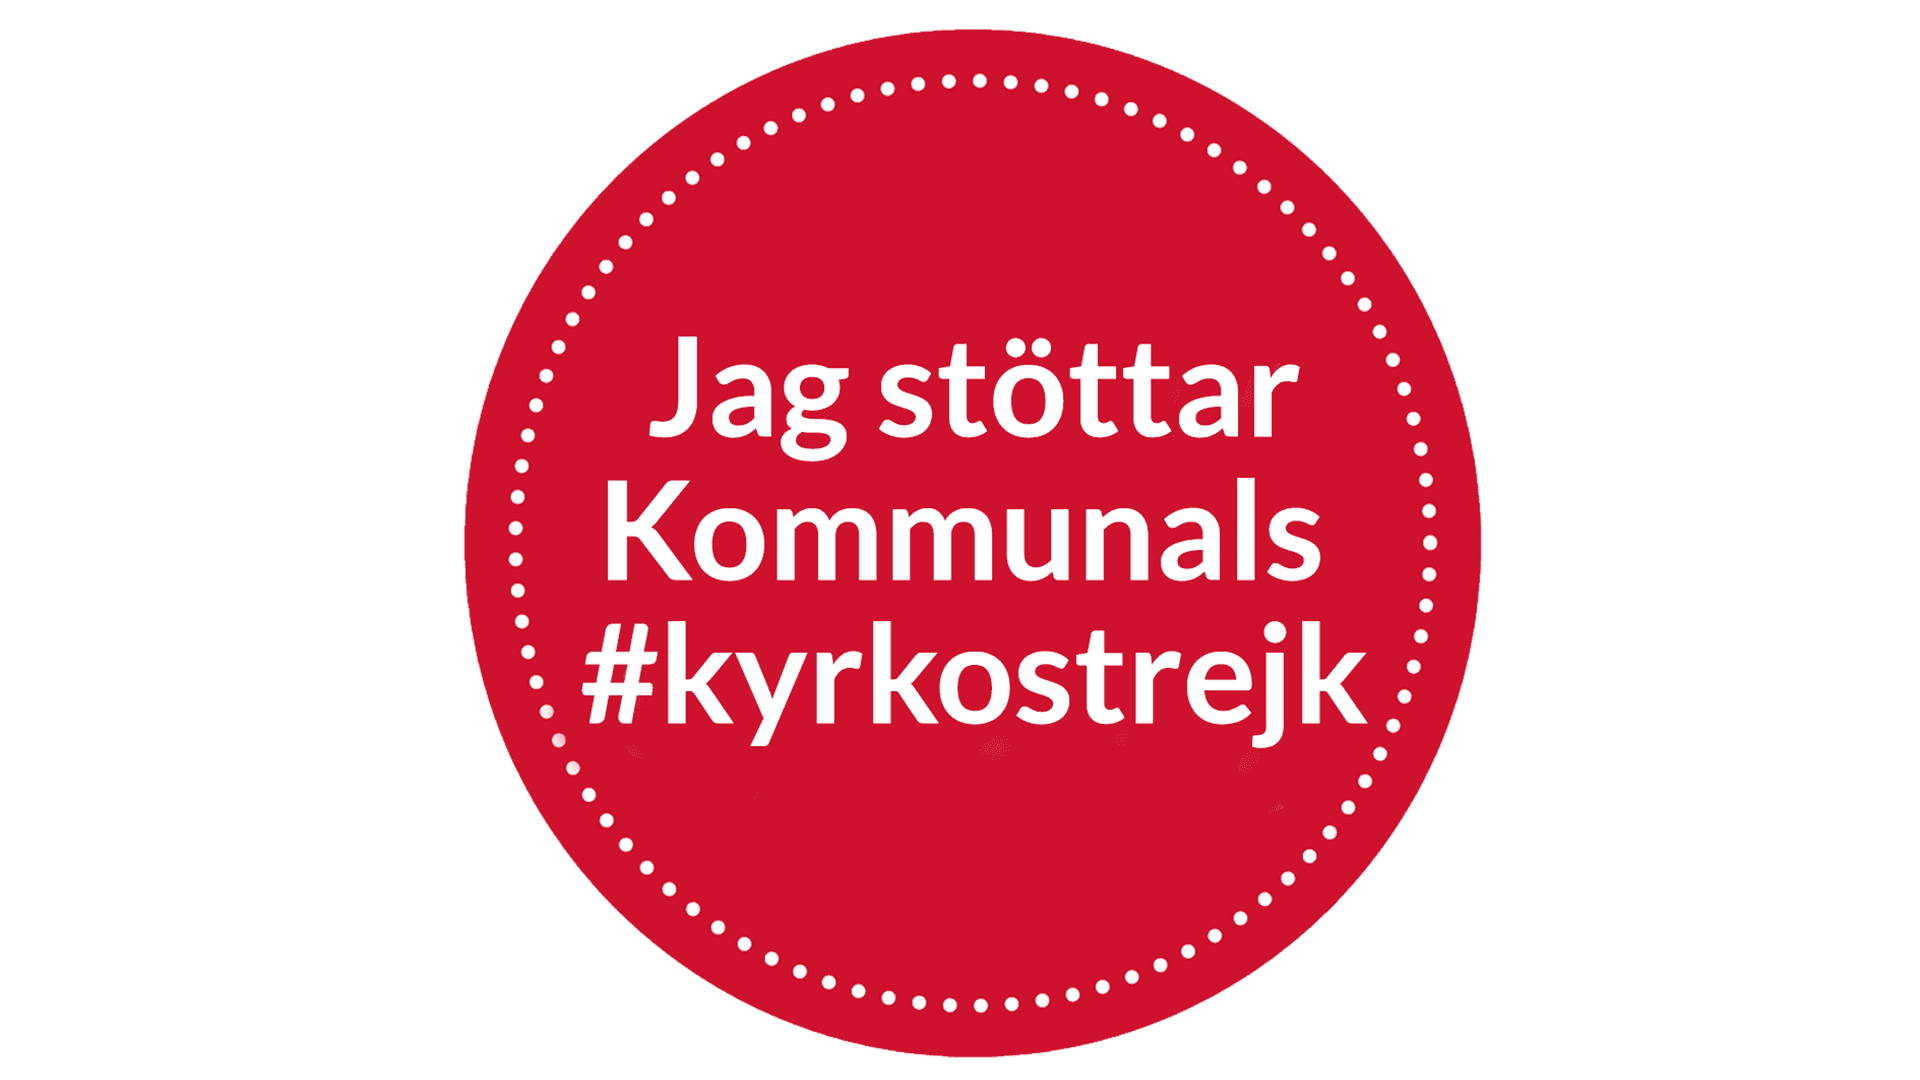 Röd cirkel med texten "Jag stöttar Kommunals #kyrkostrejk"